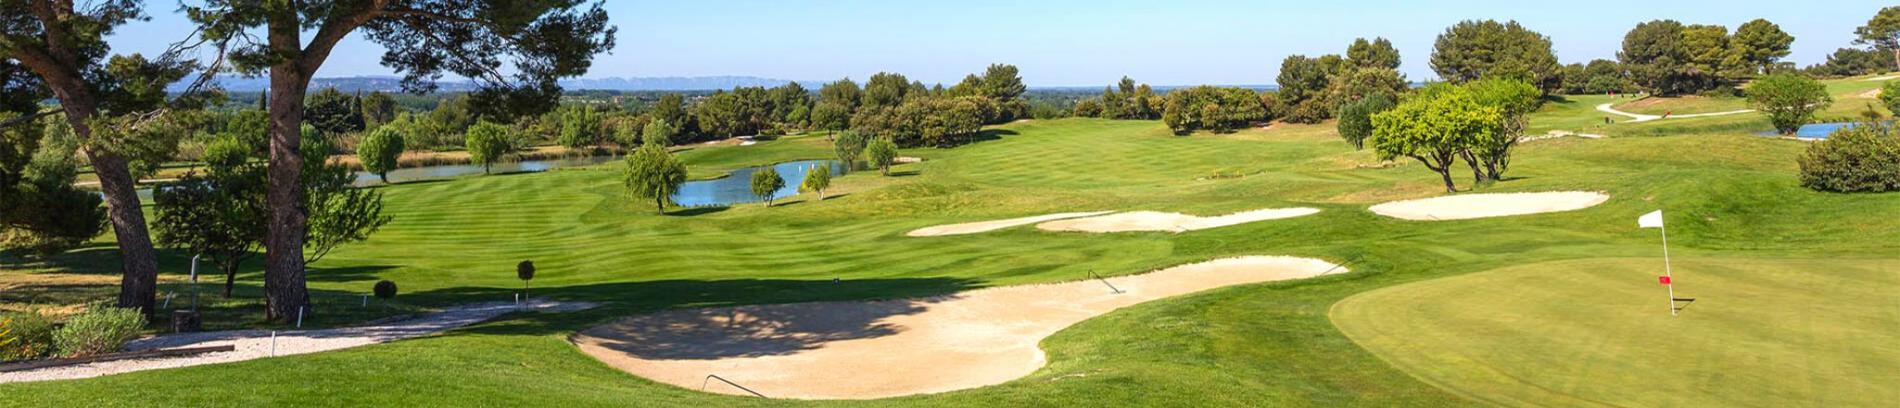 Slide Résidence Provence Country Club à Saumane - Terrain de golf